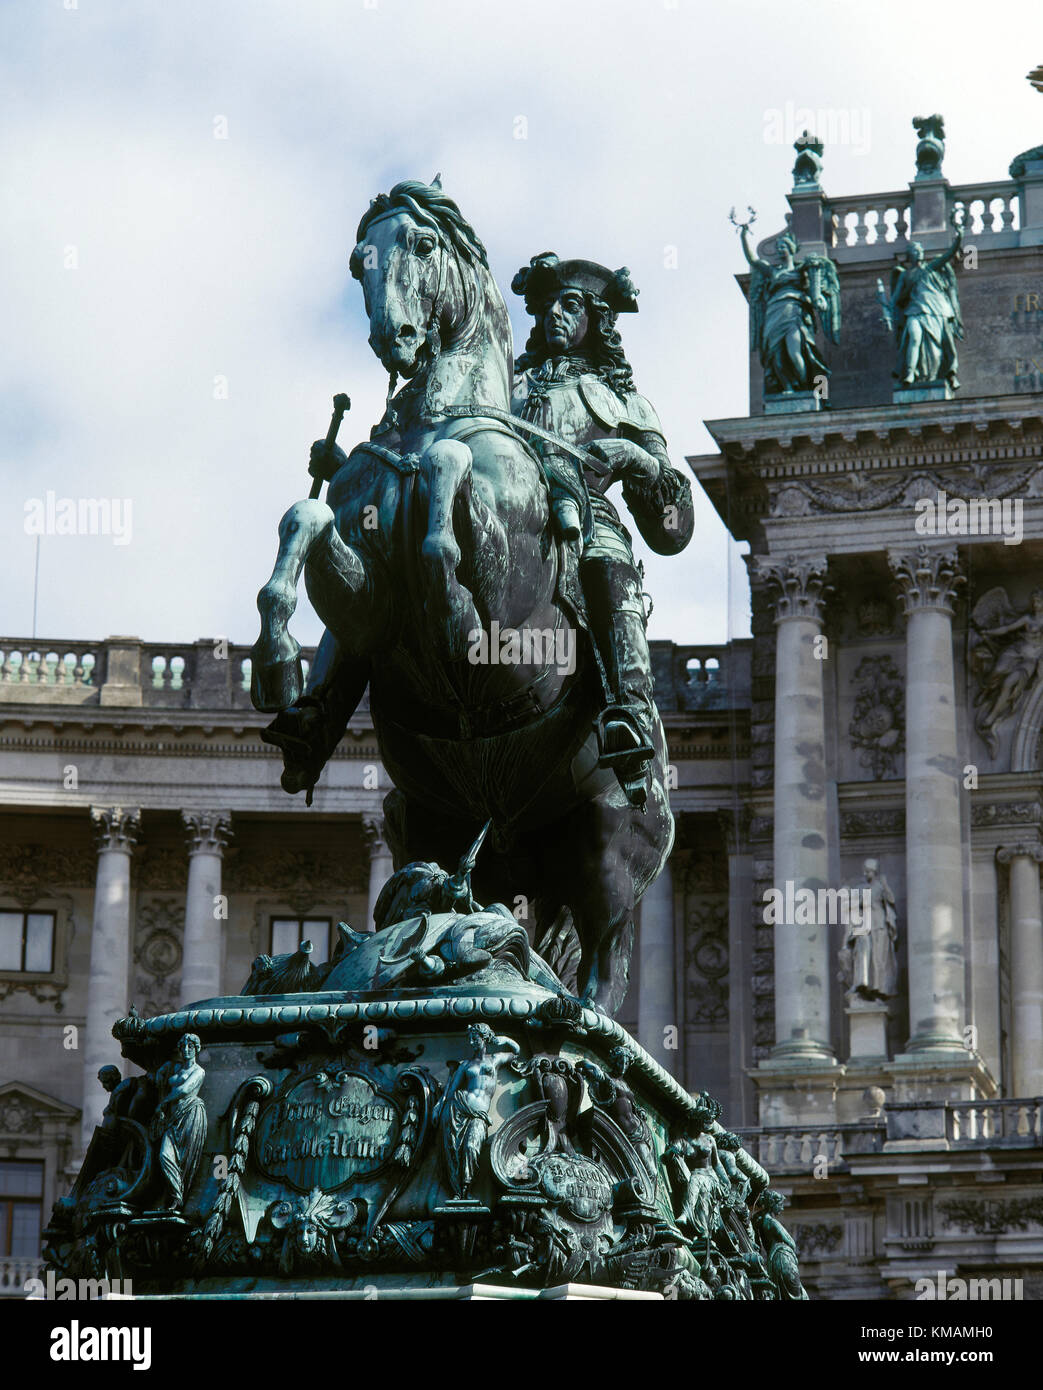 Il principe Eugenio di Savoia (1663-1736). generale del sacro romano impero e la archduchy dell'Austria. dal tedesco-scultore austriaco Anton dominik fernkorn (1813-1878). eugen's Monument. nella Heldenplatz, Vienna, Austria. Foto Stock